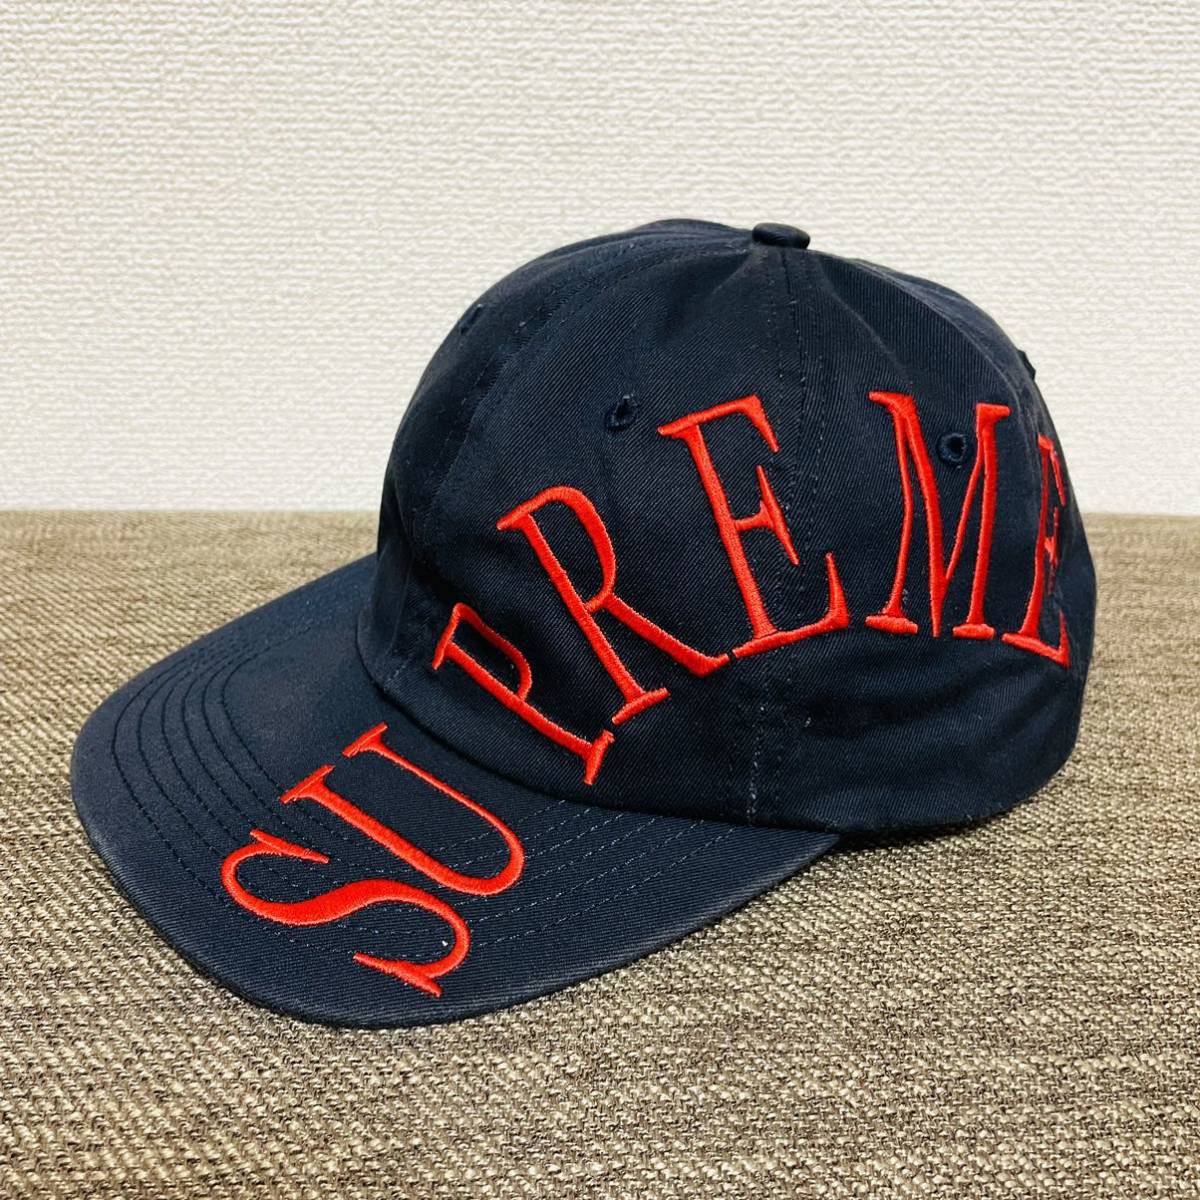 Supreme Side Arc Logo 6-Panel Cap Navy Red Free 18ss 2018年 紺 赤 ネイビー レッド サイド アーチロゴ 6パネル キャップ